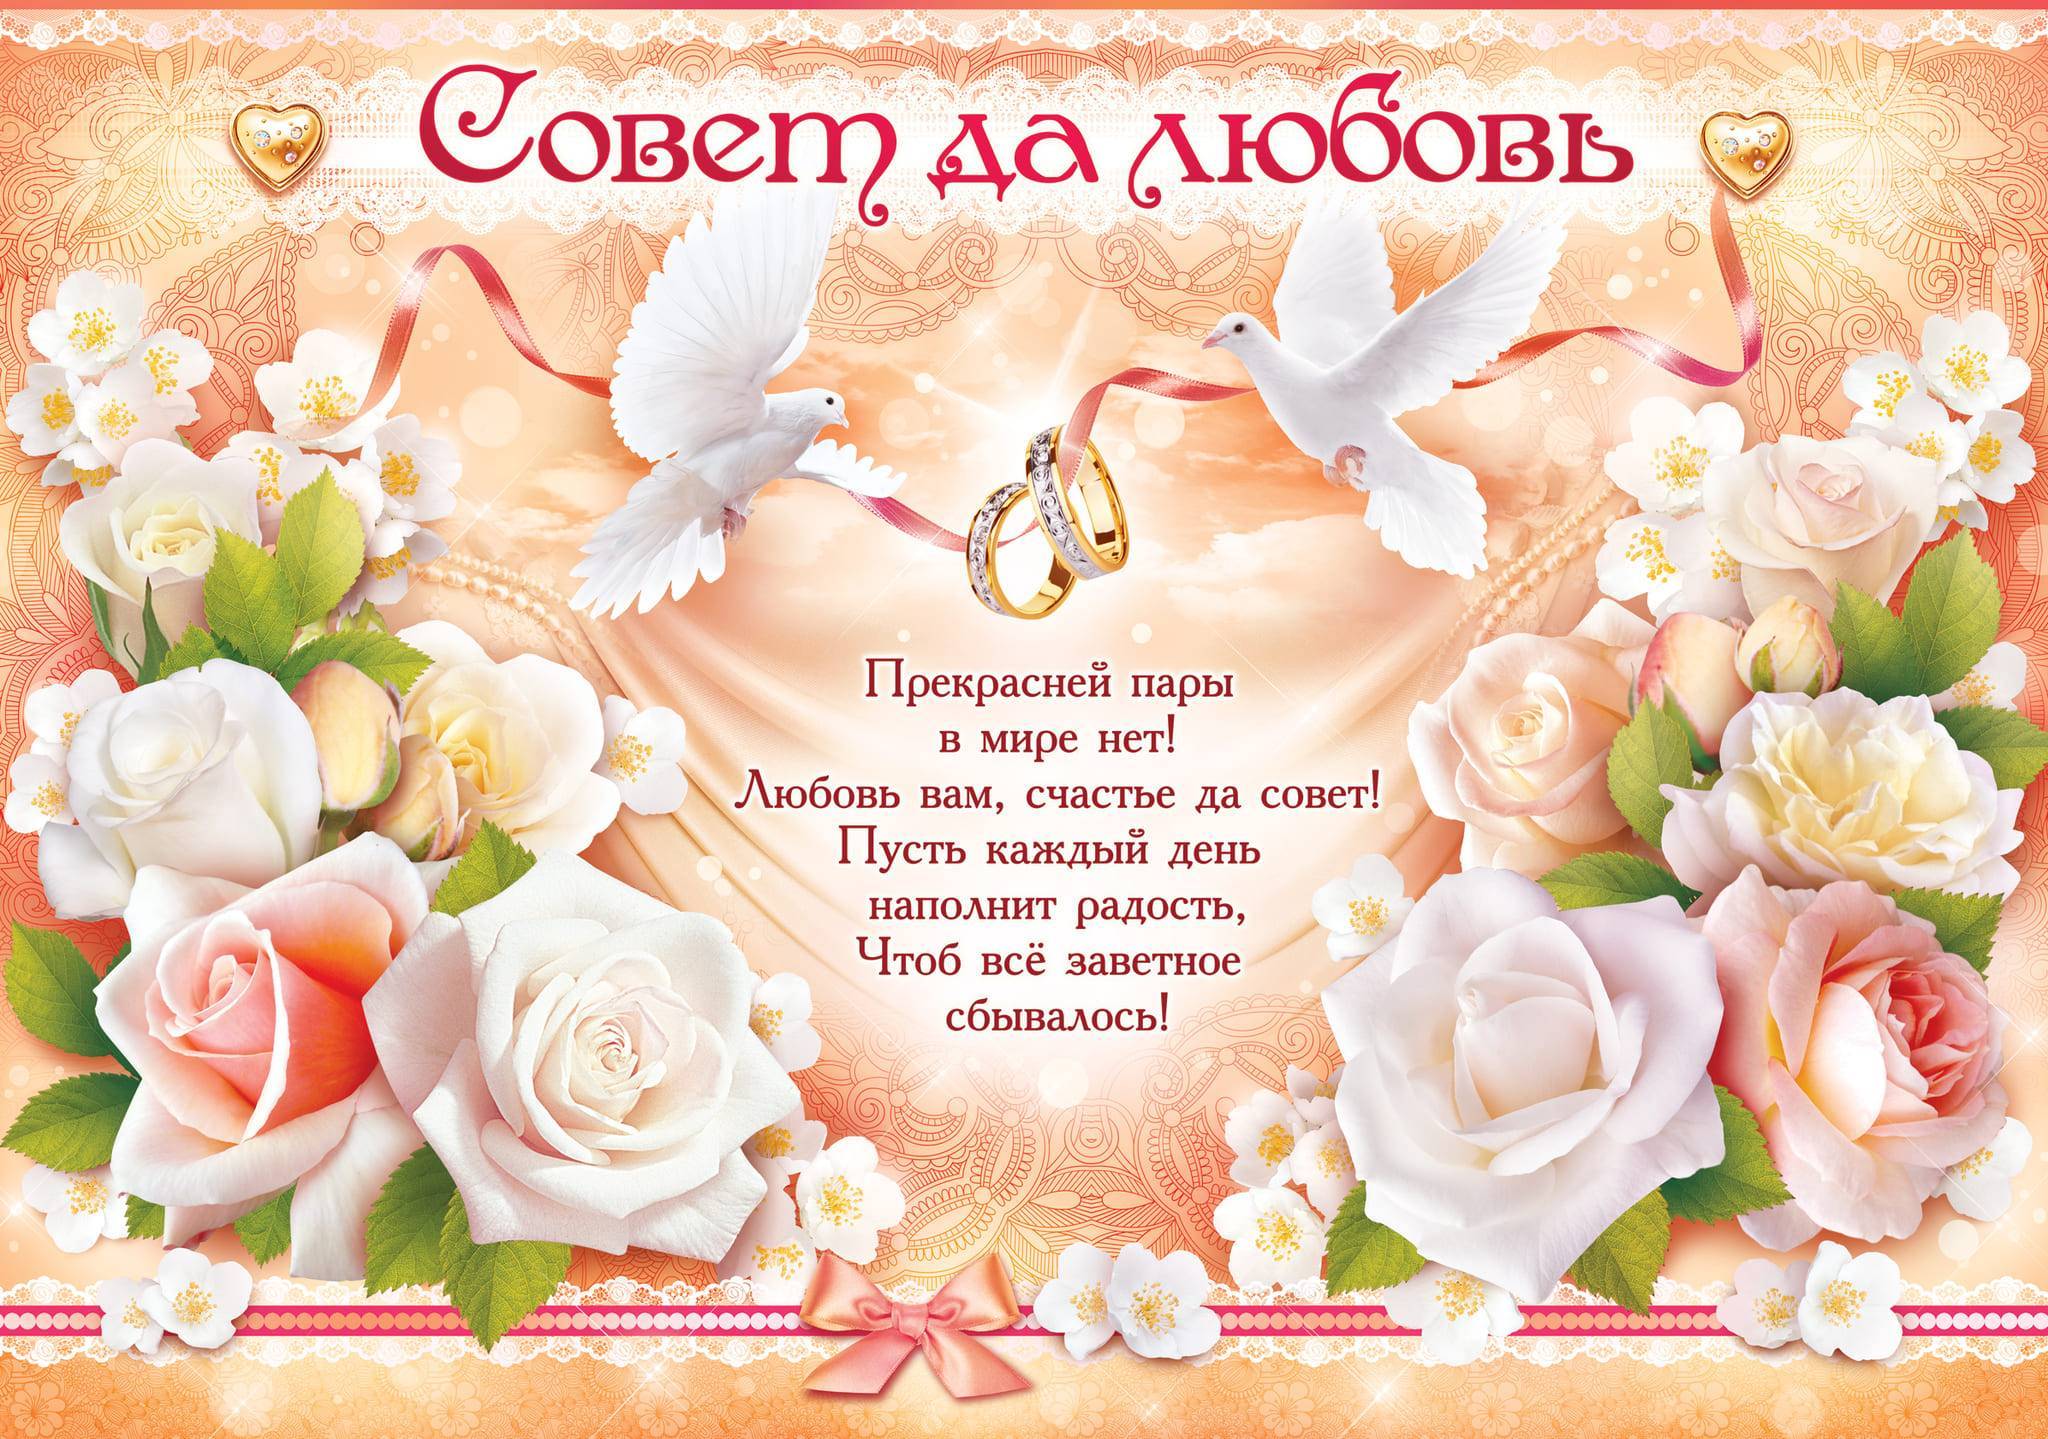 ᐉ душевные поздравления со свадьбой своими словами. душевные поздравления молодоженам своими словами - svadba-dv.ru